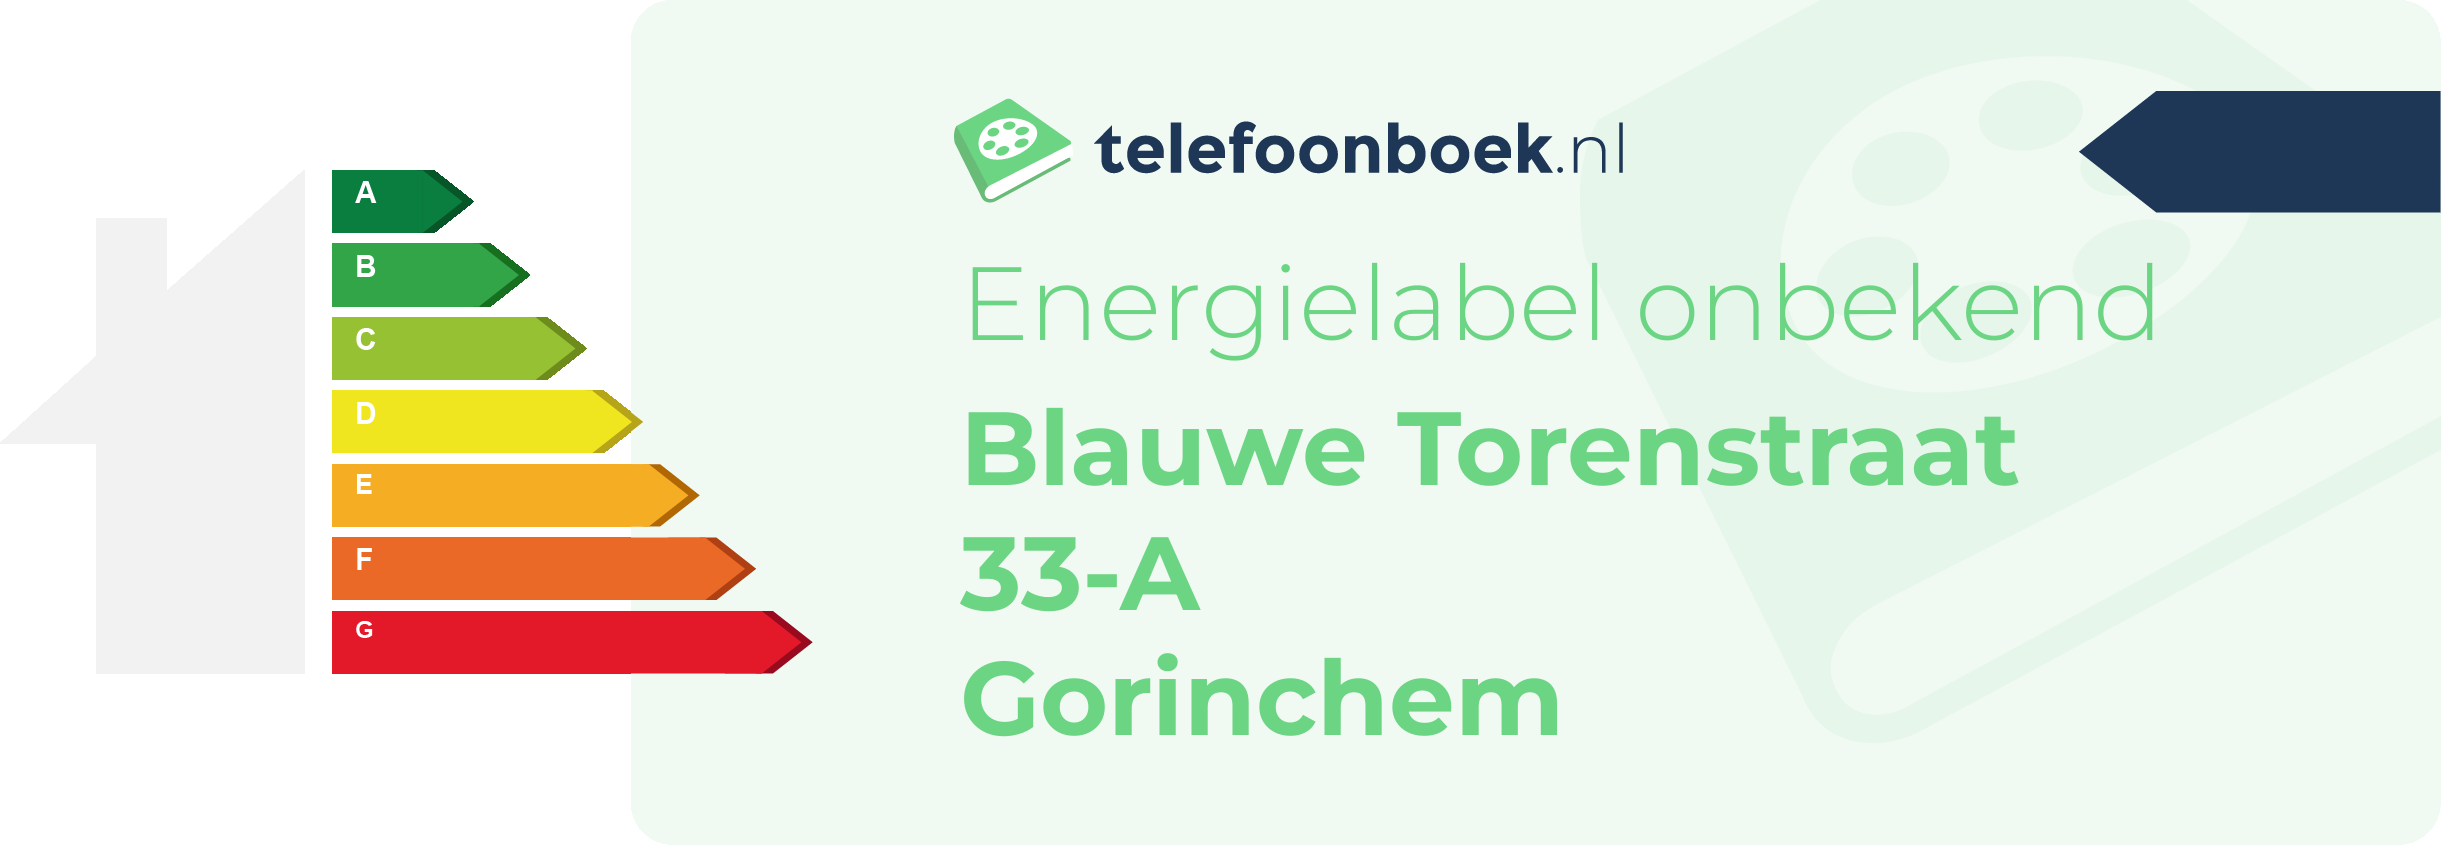 Energielabel Blauwe Torenstraat 33-A Gorinchem